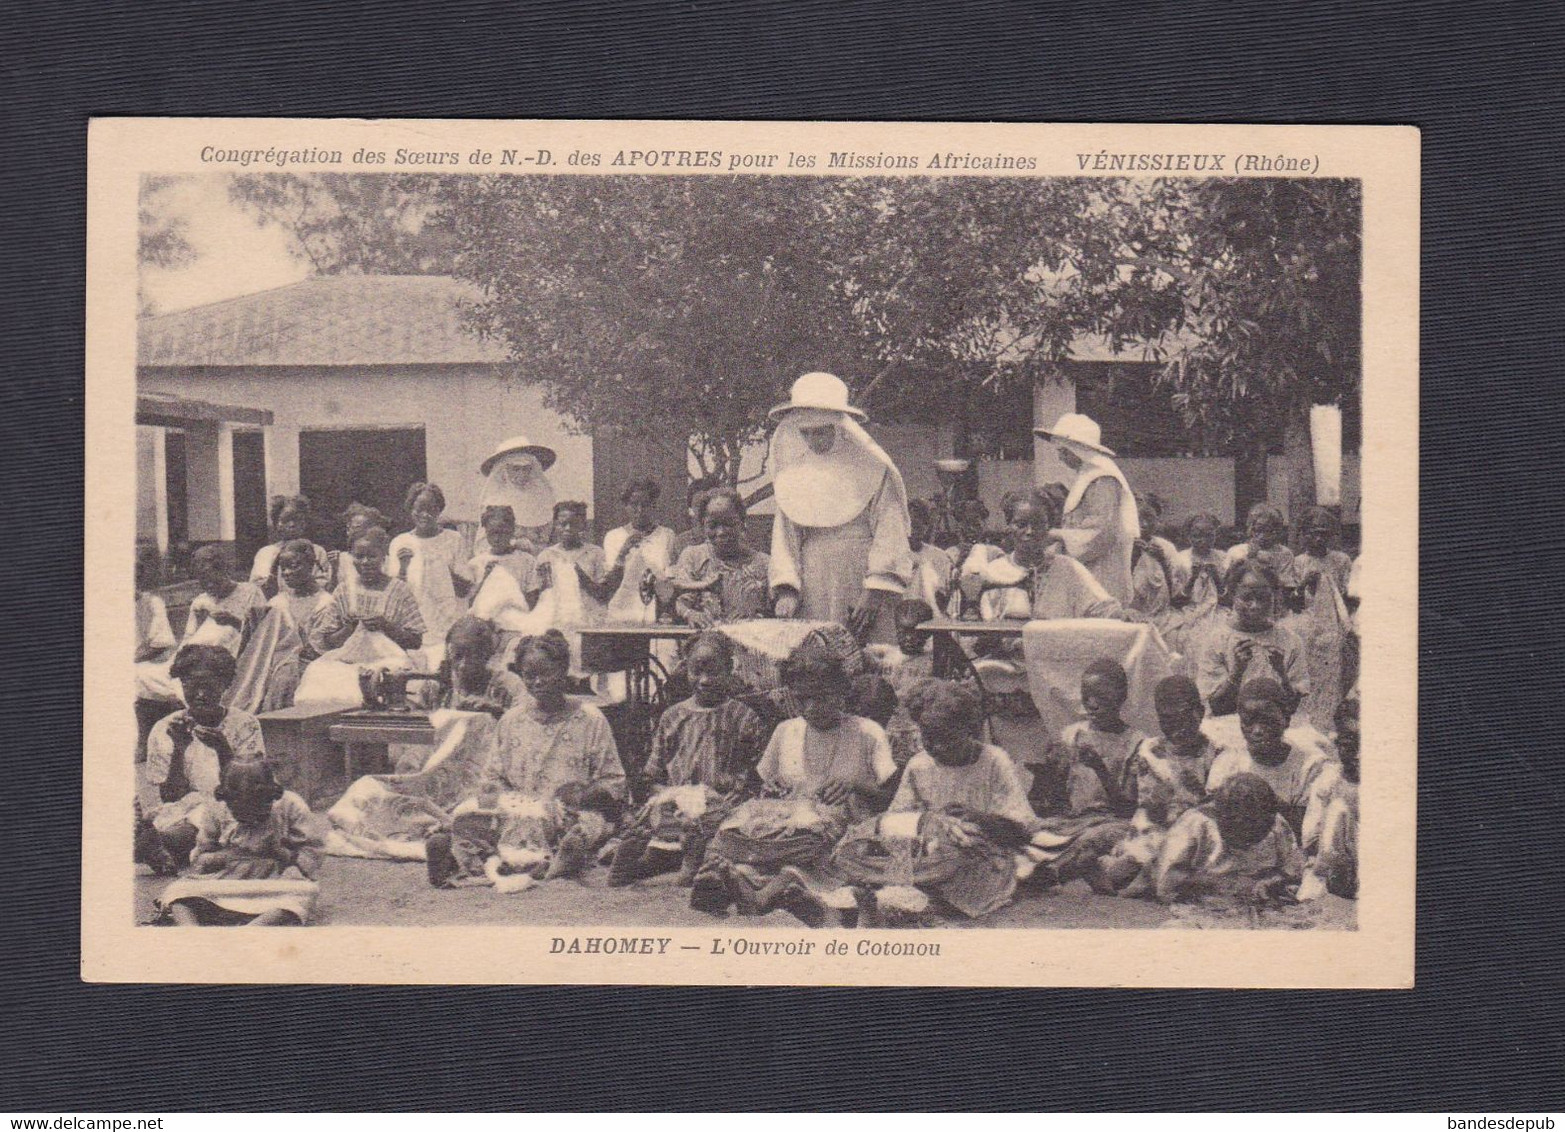 Vente Immediate Dahomey Ouvroir De Cotonou Congregation Des Soeurs De N.D. Des Apotres Missions Africaines  (44100 ) - Dahomey